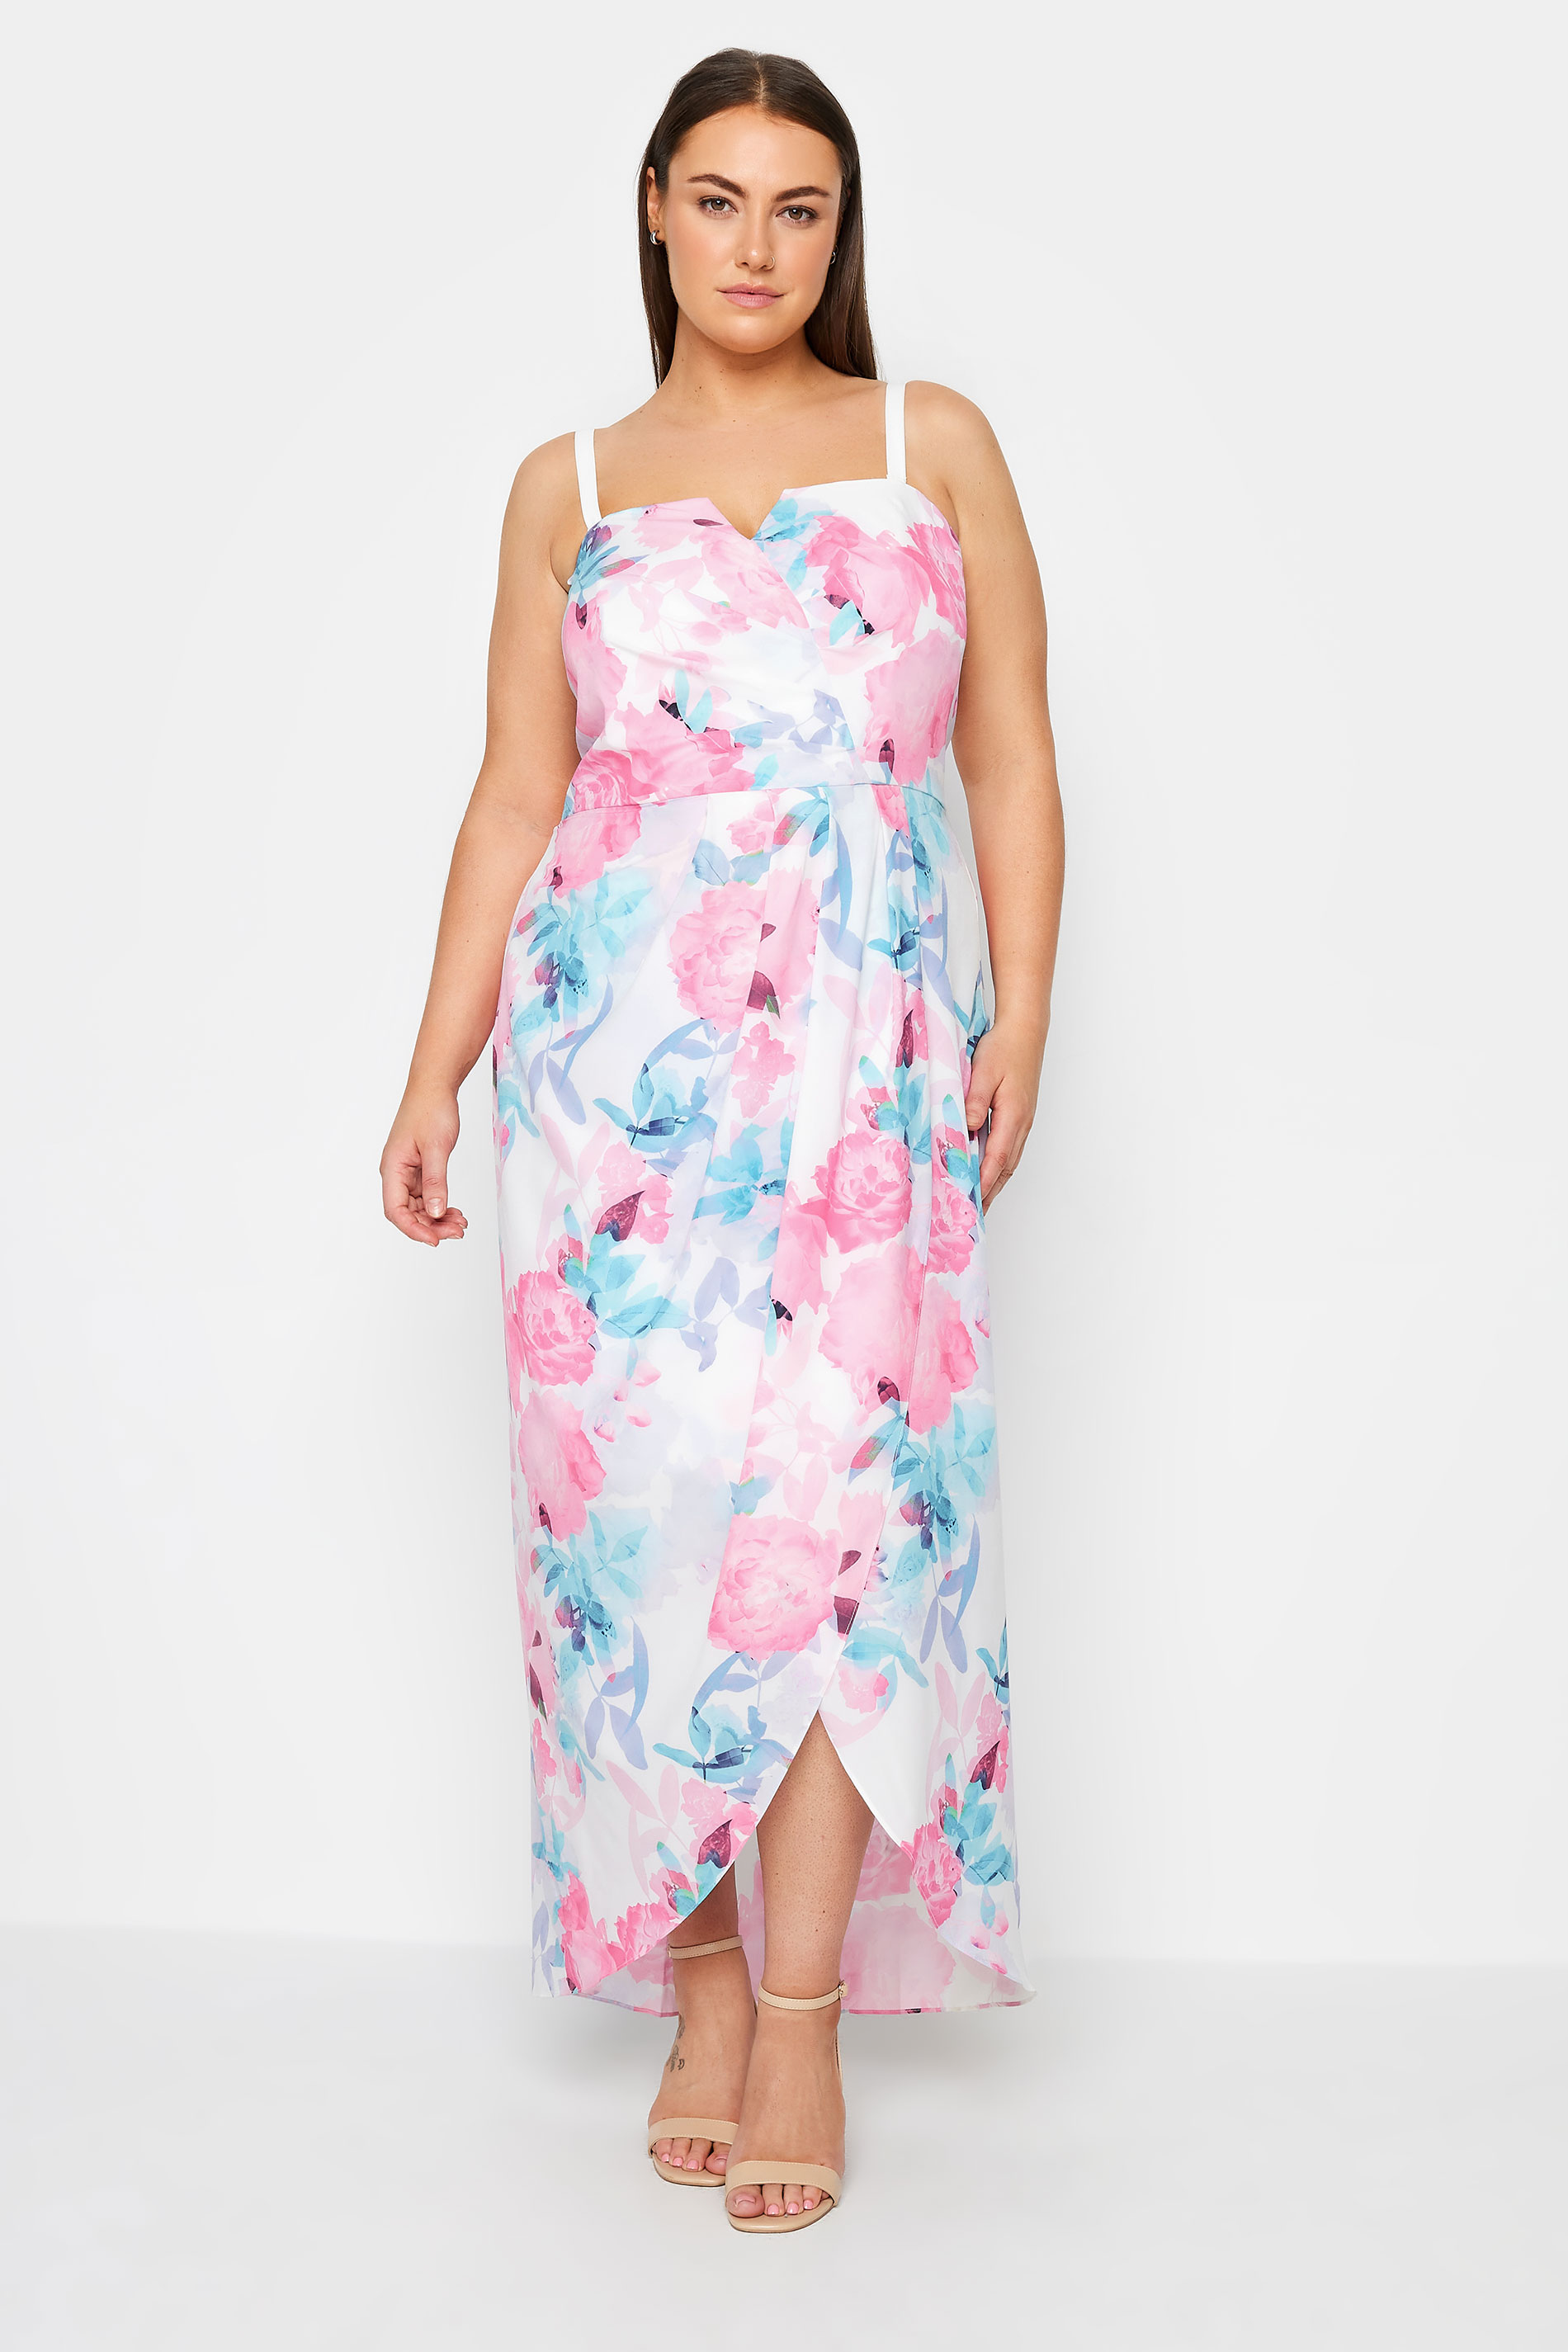 Evans Pink & Blue Strapless Floral Dress 2